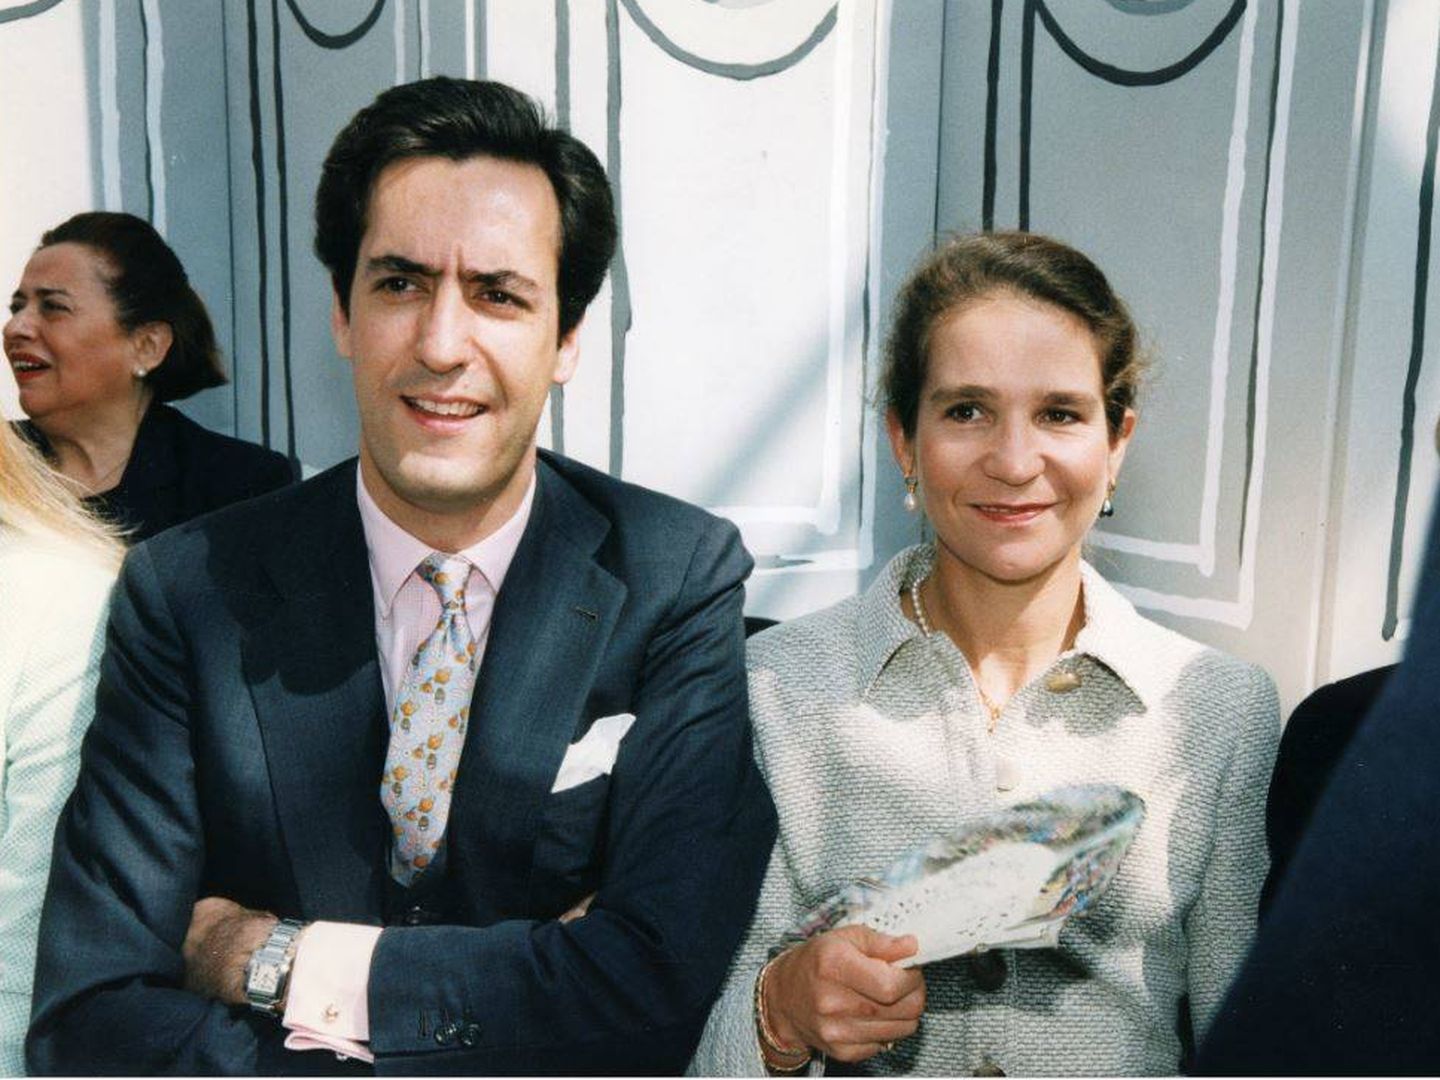 Jaime de Marichalar y la infanta Elena, en un desfile de Chanel en París en 1997. (Getty)